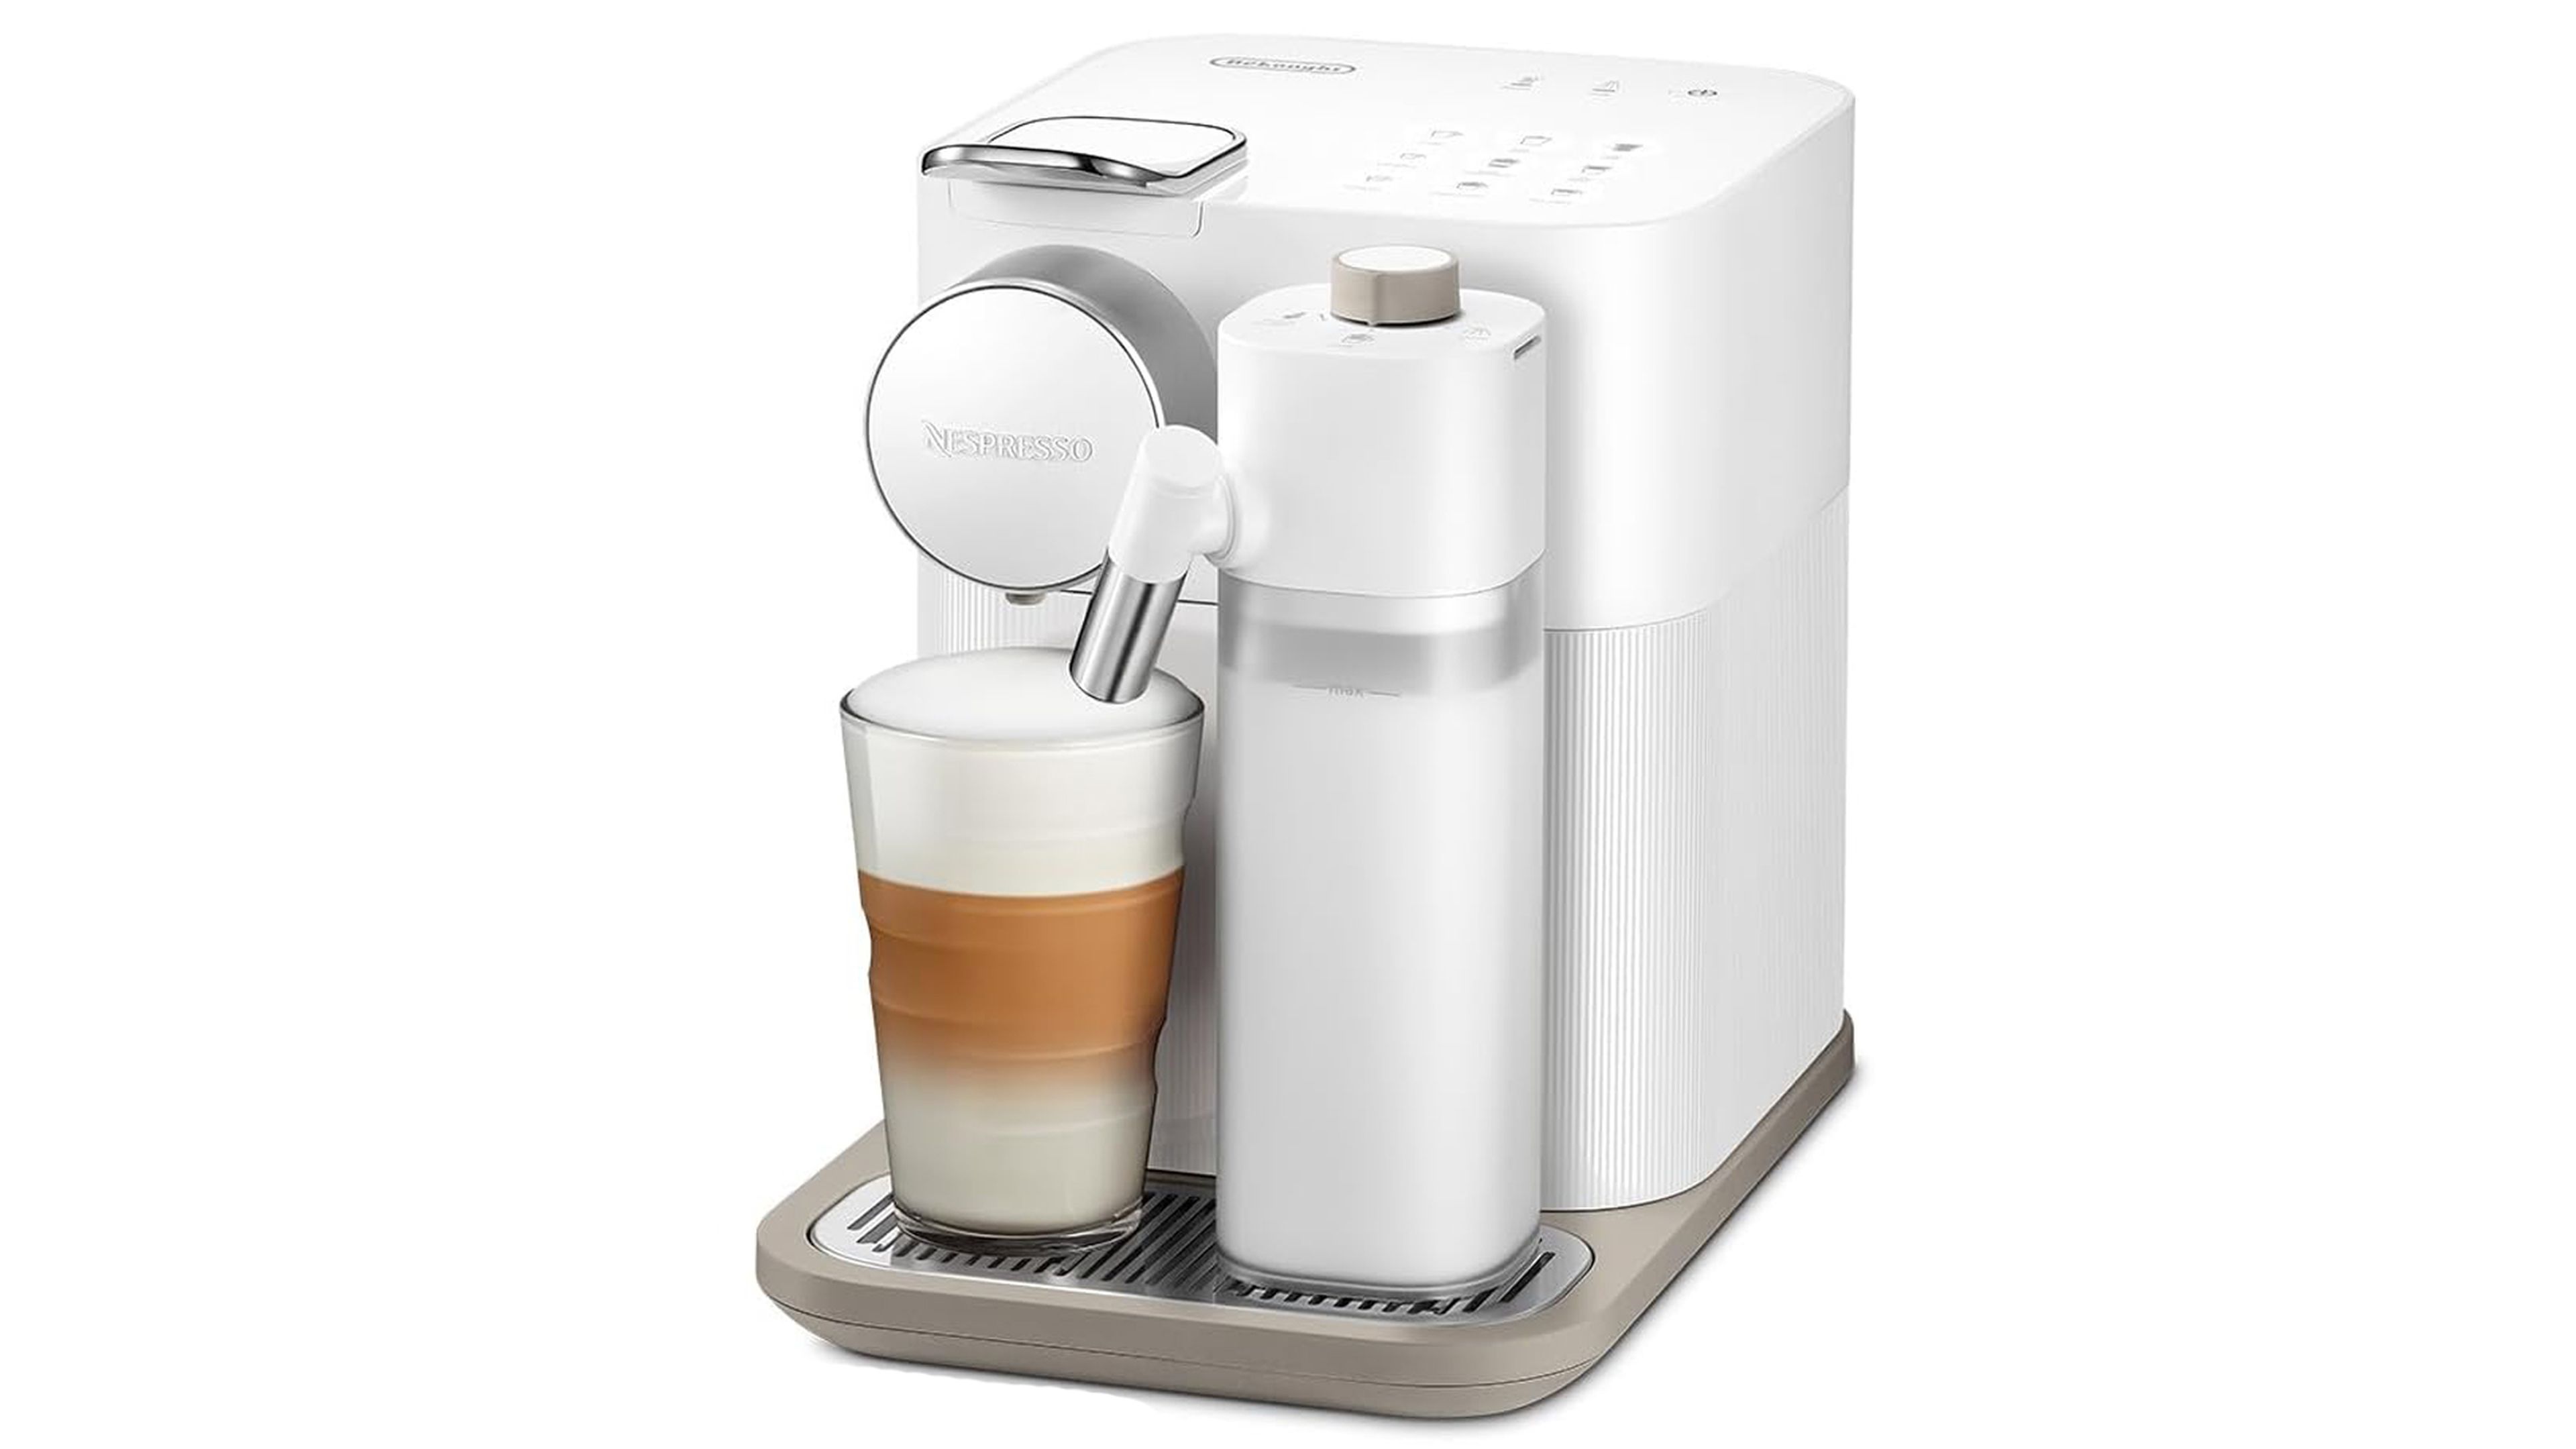 Compatible con Dolce Gusto y Nespresso, esta cafetera multicápsulas está a  precio mínimo hoy en